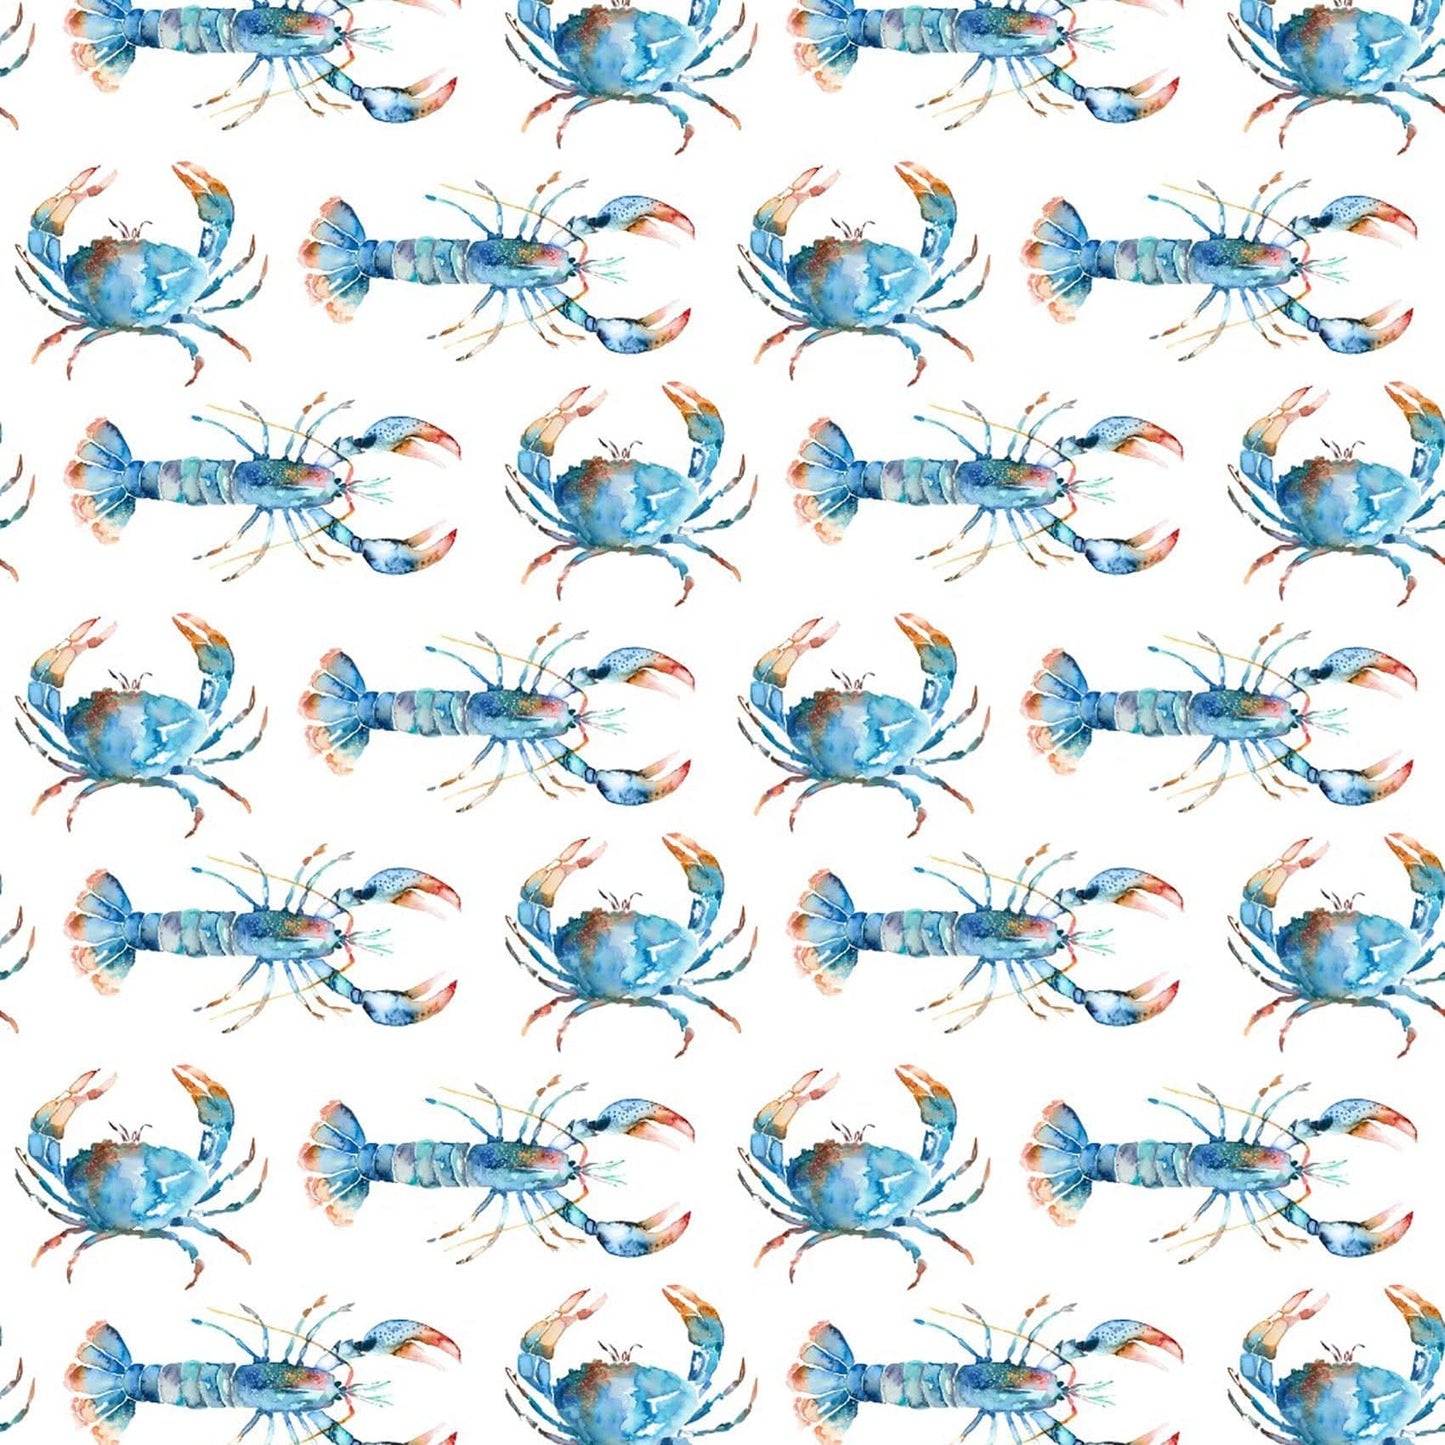 Crustaceans Fabric